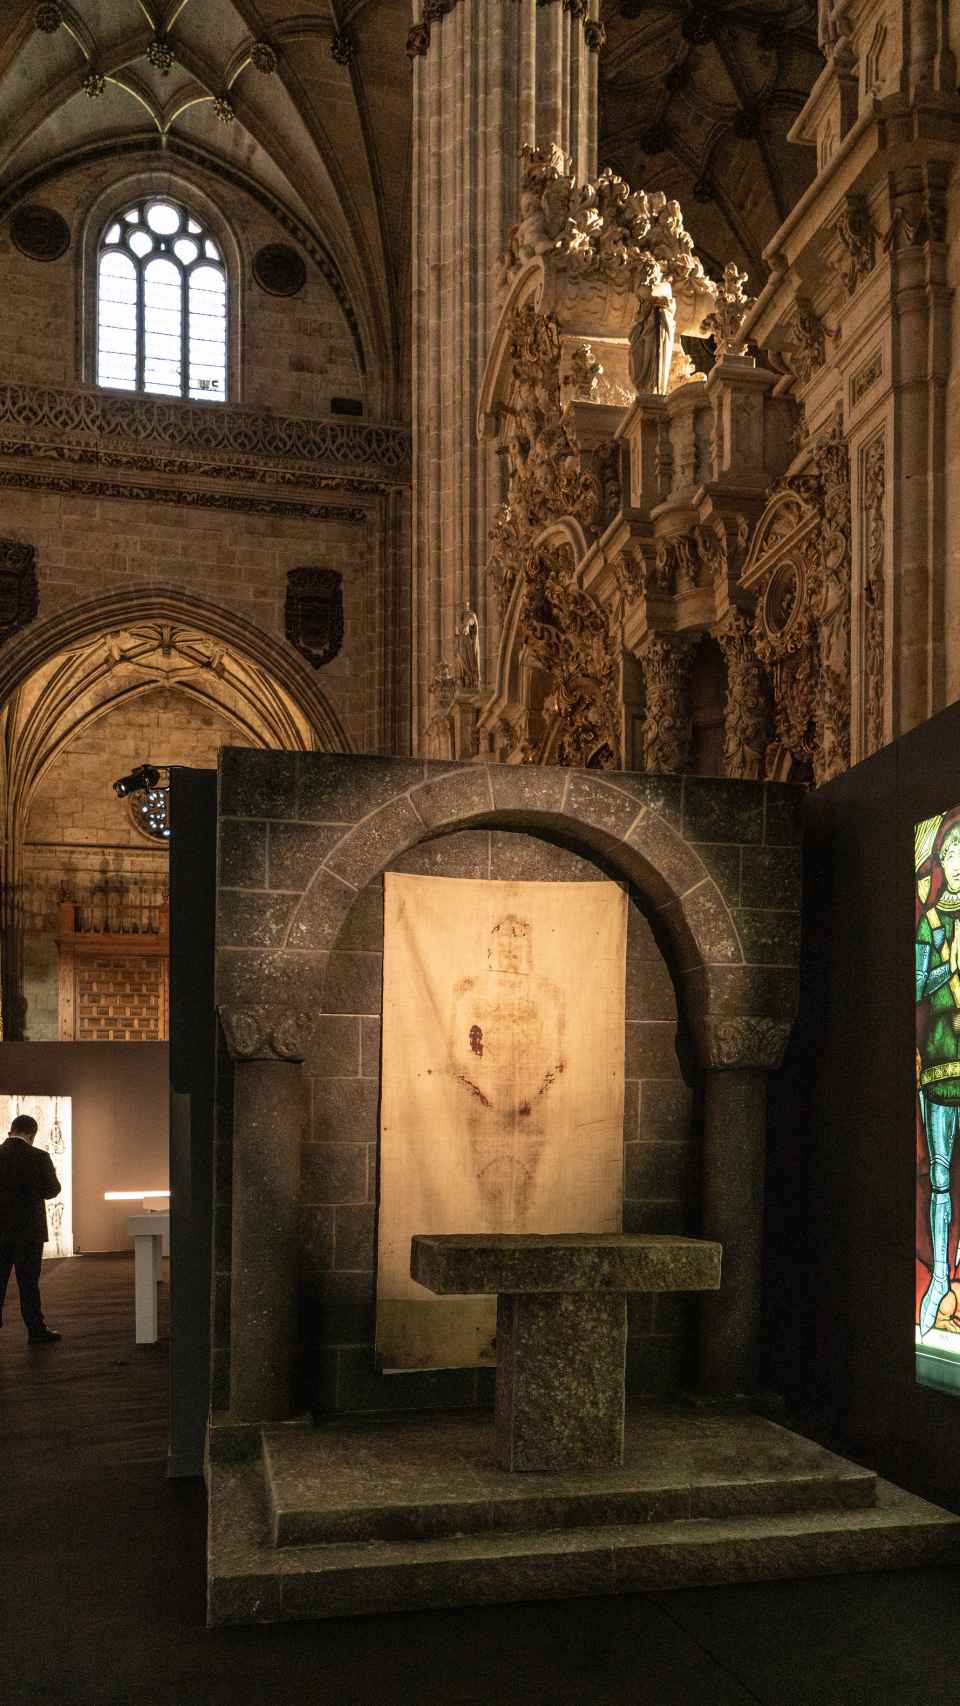 La exposición, ubicada en la Catedral de Salamanca, ha despertado gran expectación y son miles las personas que ya la han visitado